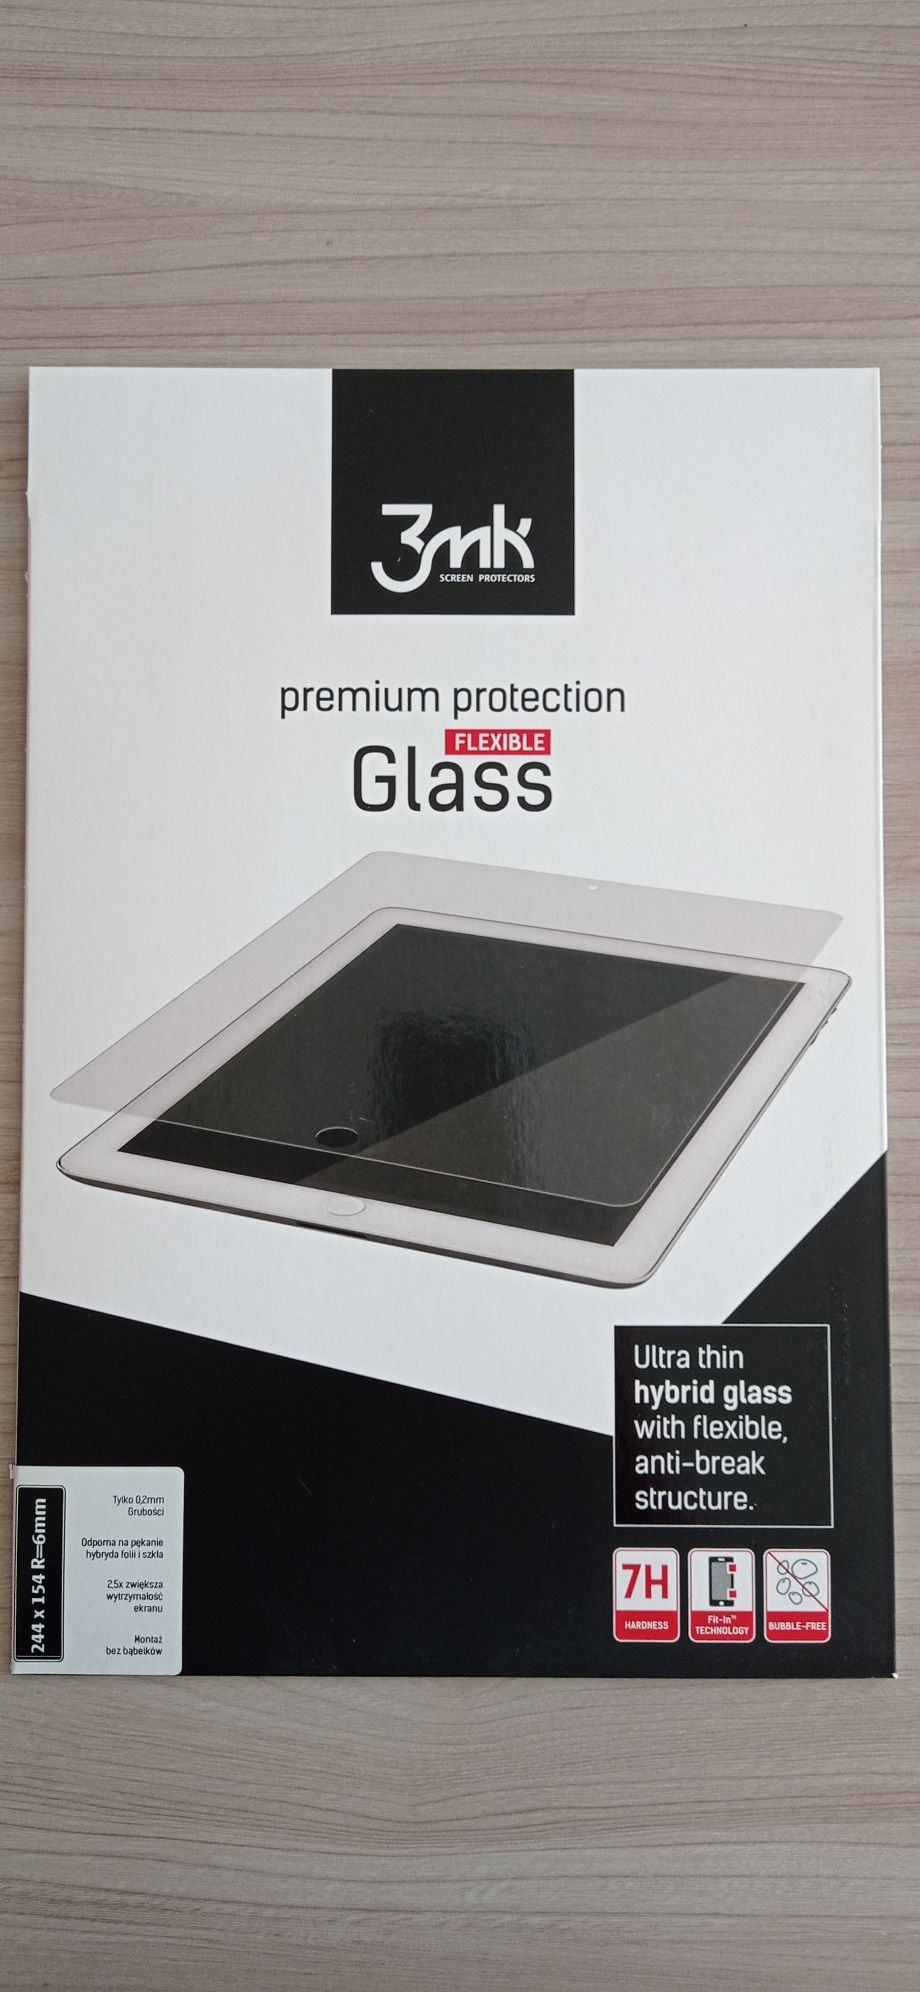 Szkło hybrydowe FLEXIBLE Glass o wymiarach 244 x 154 mm. R=6 mm.